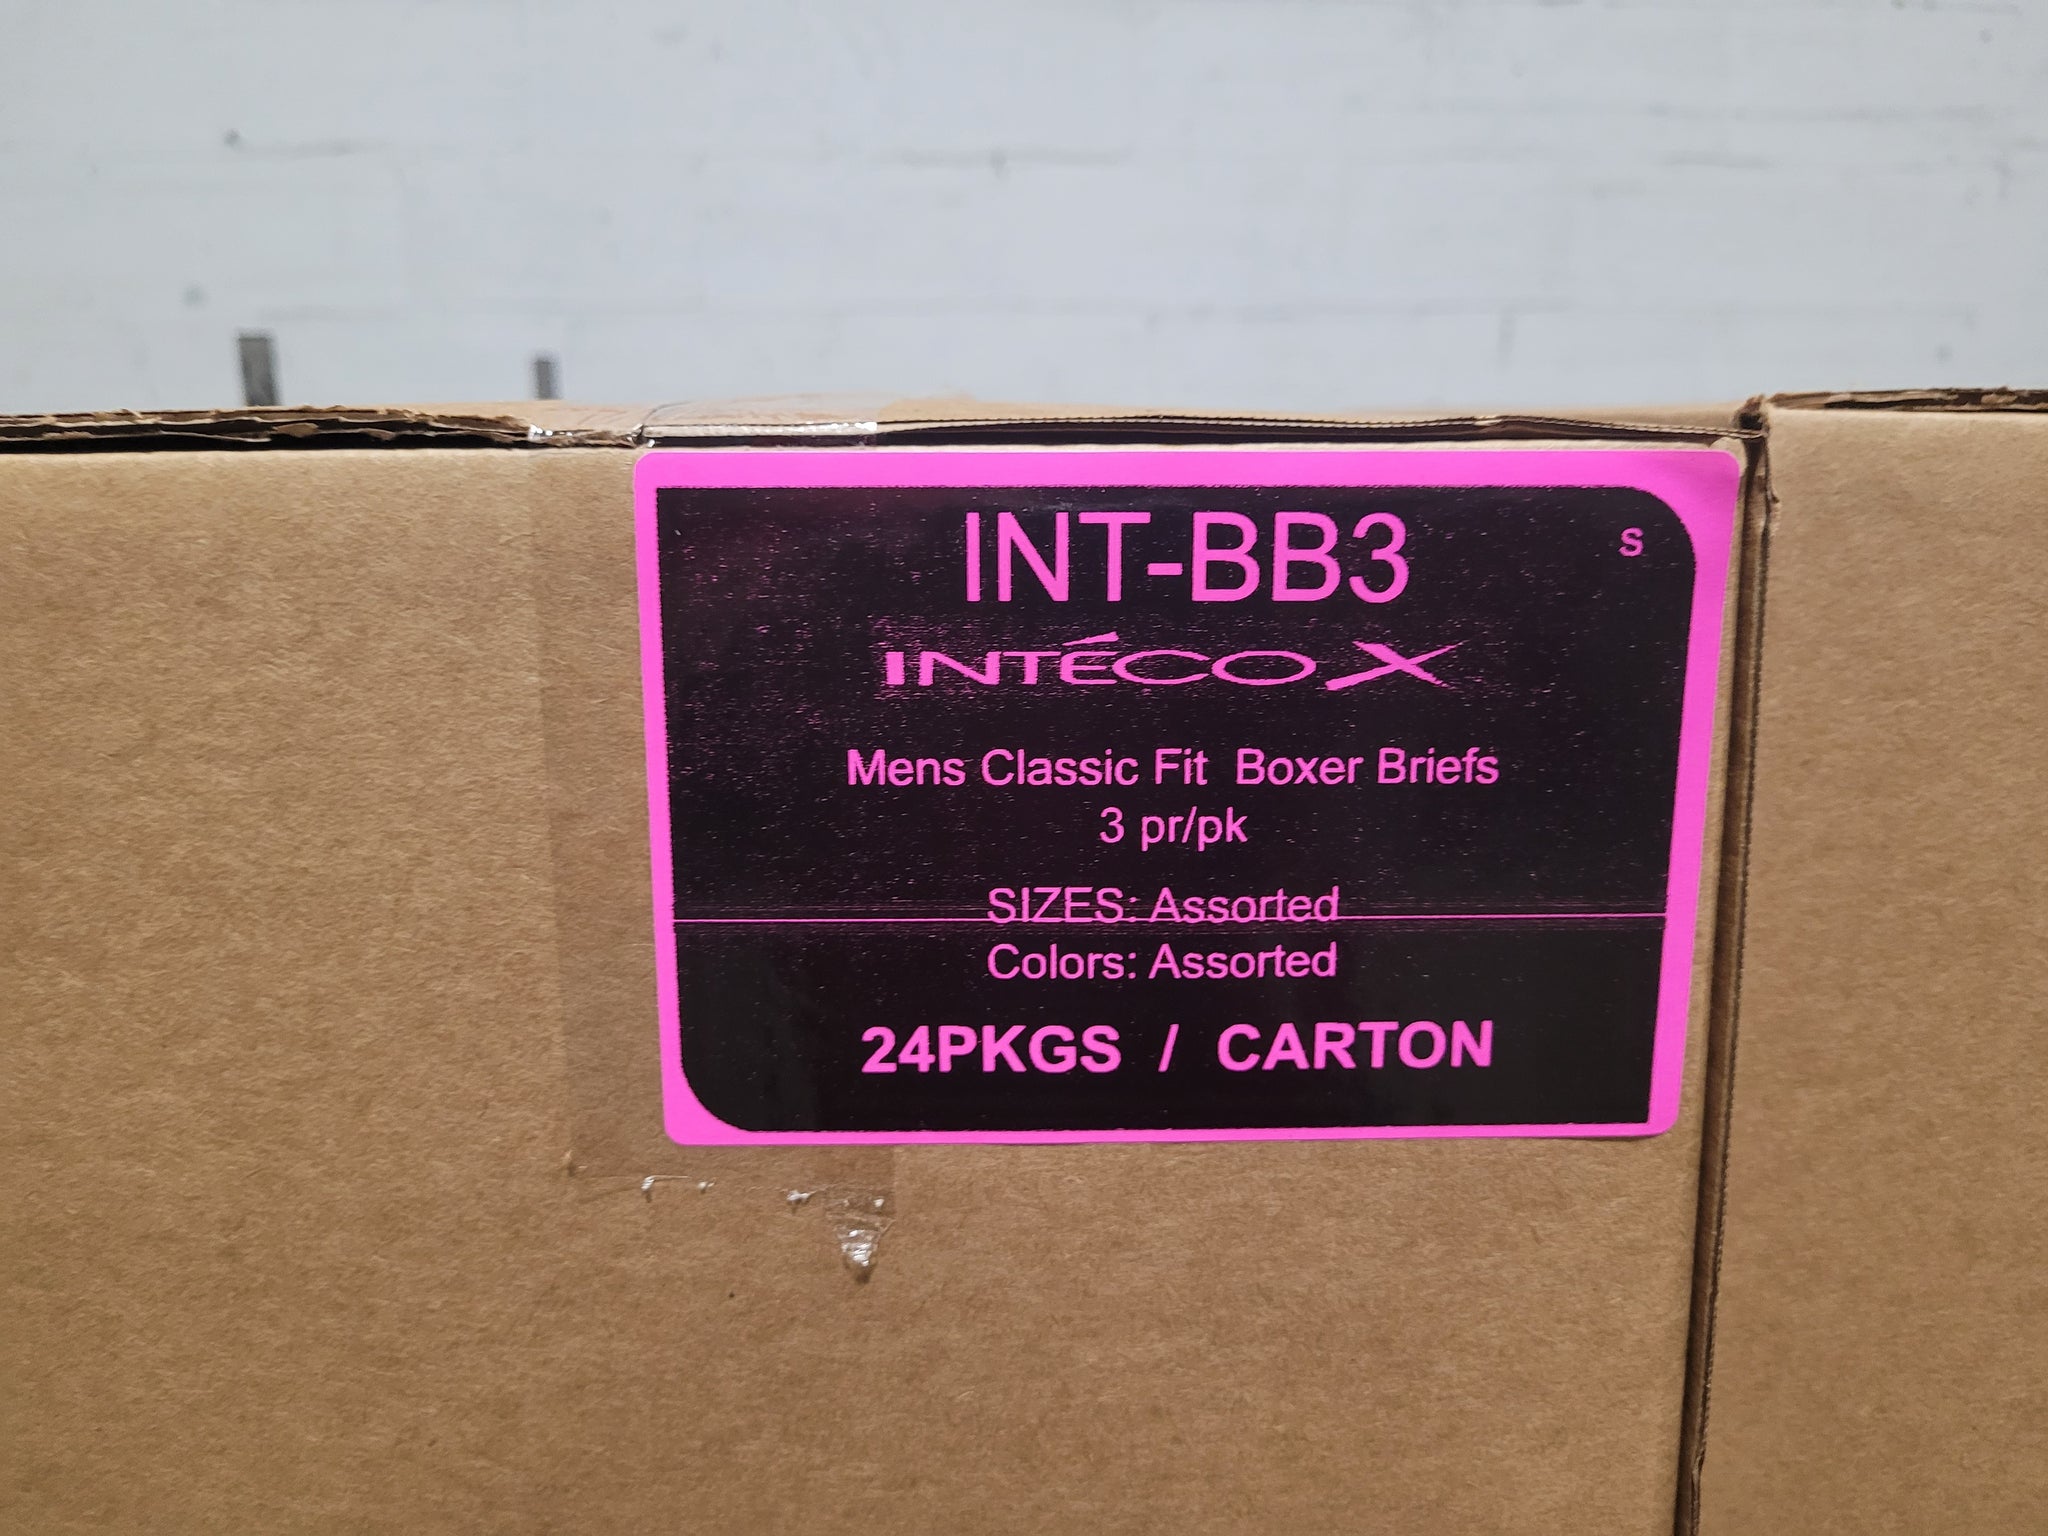 INTECOX MENS CLASSIC FIT BOXER BRIEFS 3PR/PK STYLE INT-BB3 – Atlantic  Wholesale